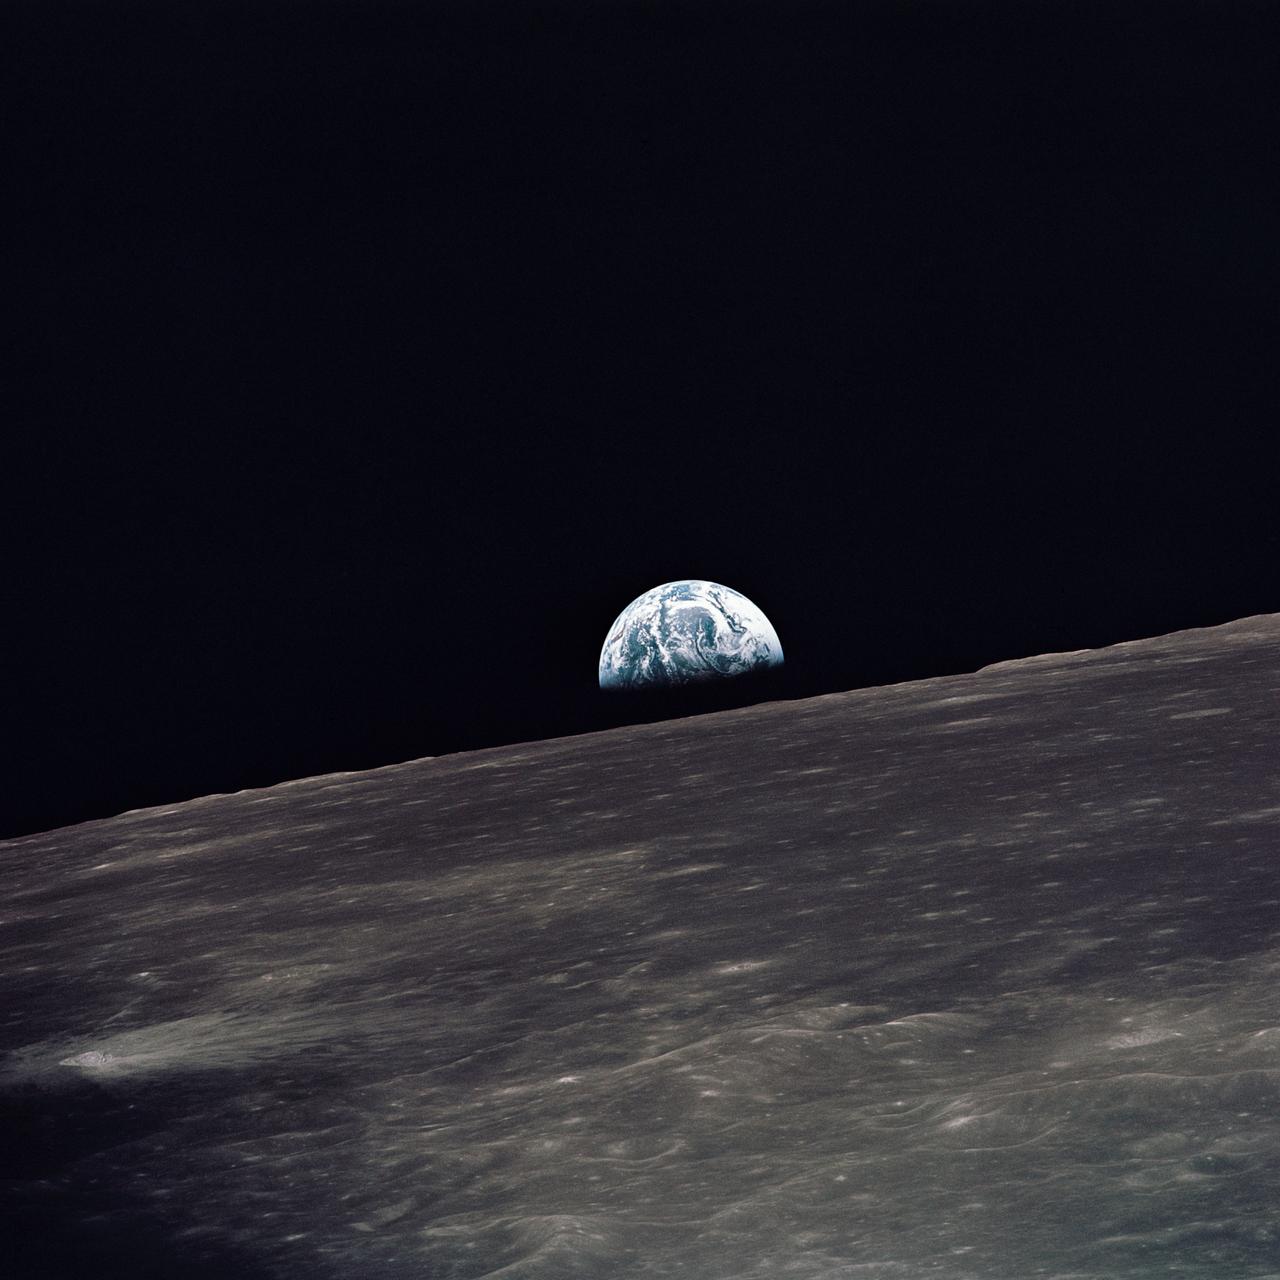 Вид на Землю, що піднімається над місячним горизонтом, сфотографований з місячного модуля «Аполлон-10», дивлячись на захід у напрямку руху.  Місячний модуль у момент, коли було зроблено знімок, знаходився над нагір’ям зворотного боку Місяця приблизно на 105 градусах східної довготи.